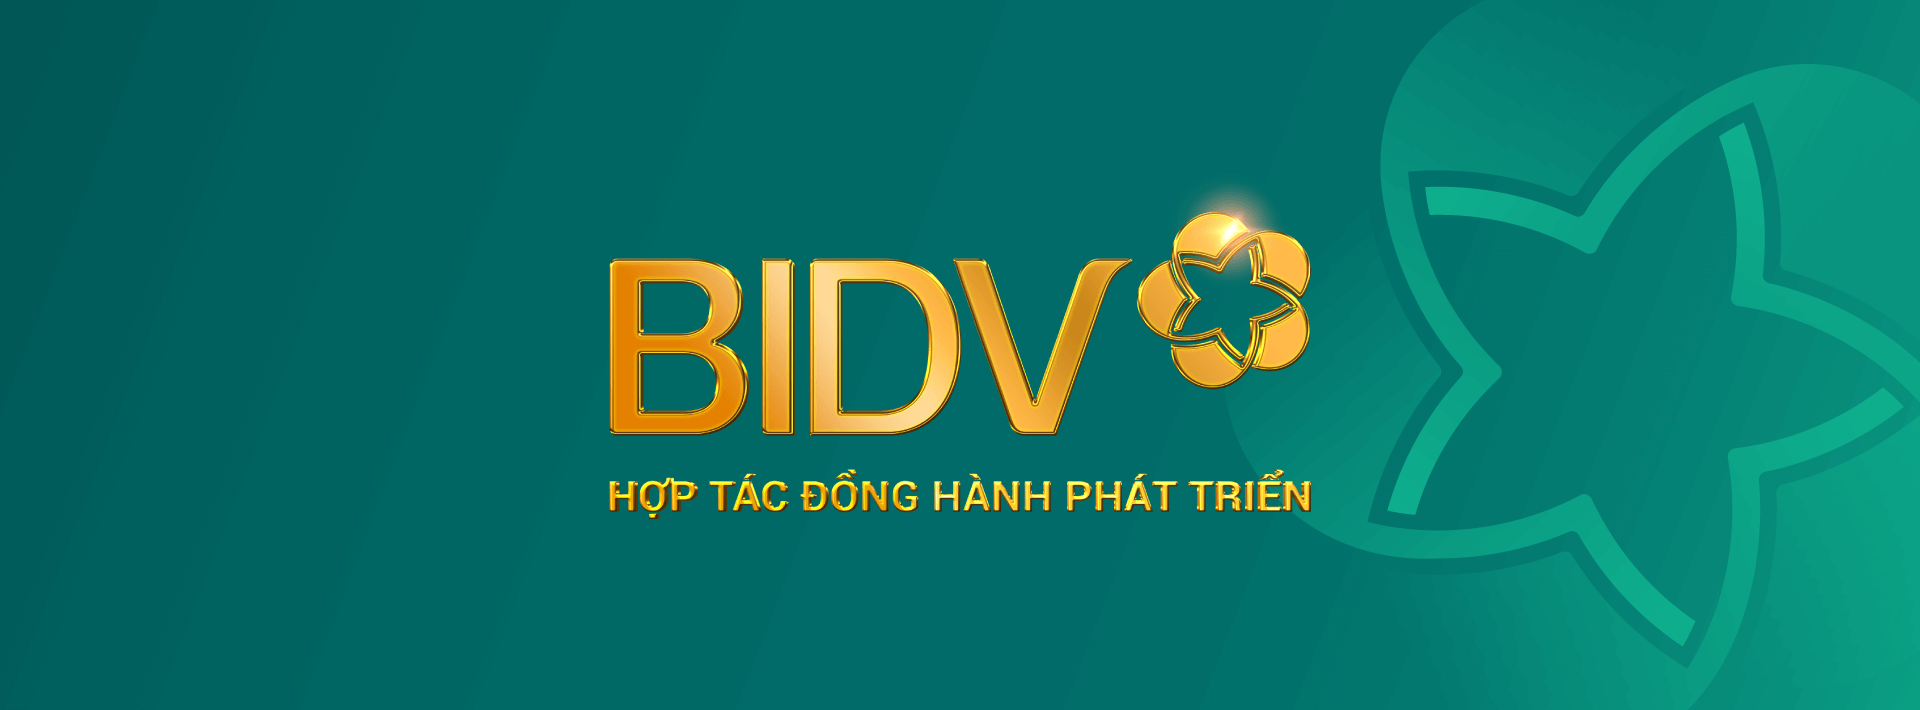 Nhận diện thương hiệu mới thay đổi của BIDV